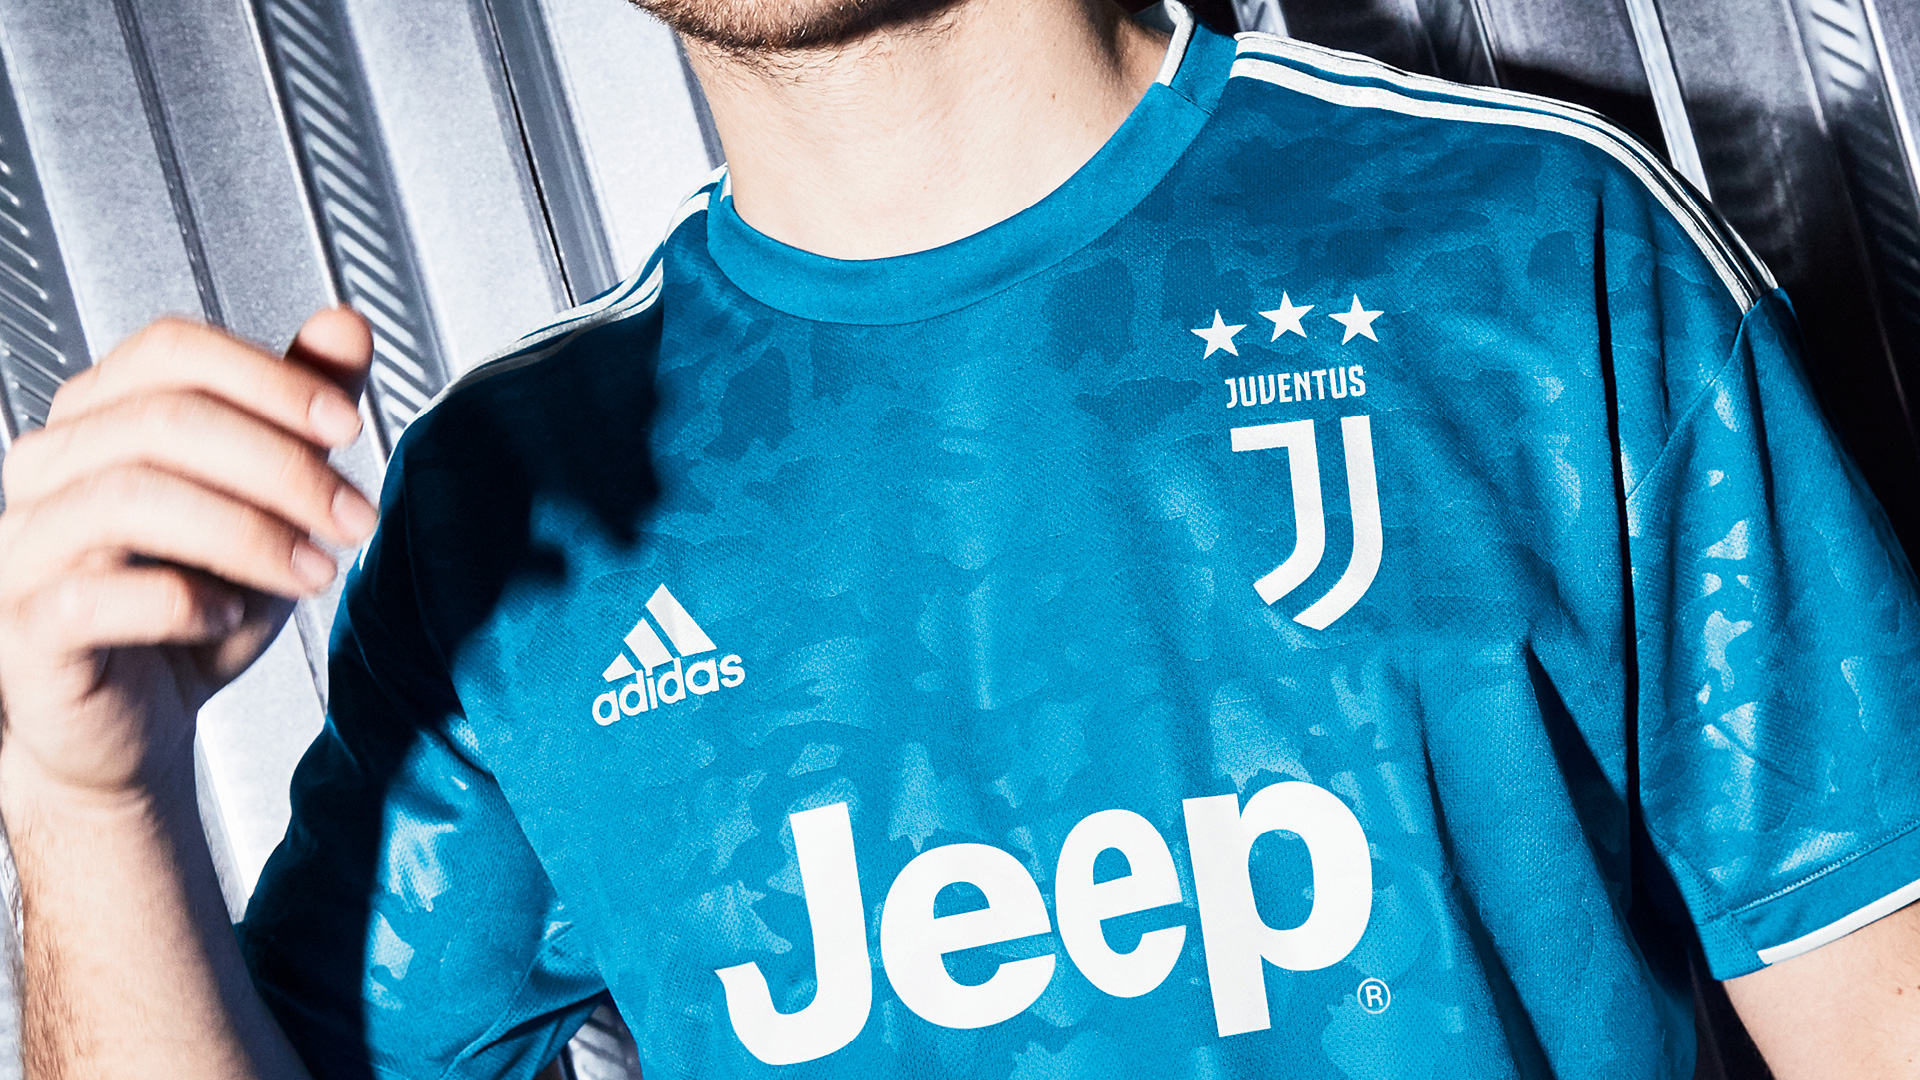 huella dactilar Sustancialmente Comunismo Adidas presentó el tercer uniforme de la Juventus de Turin - Futbol Sapiens